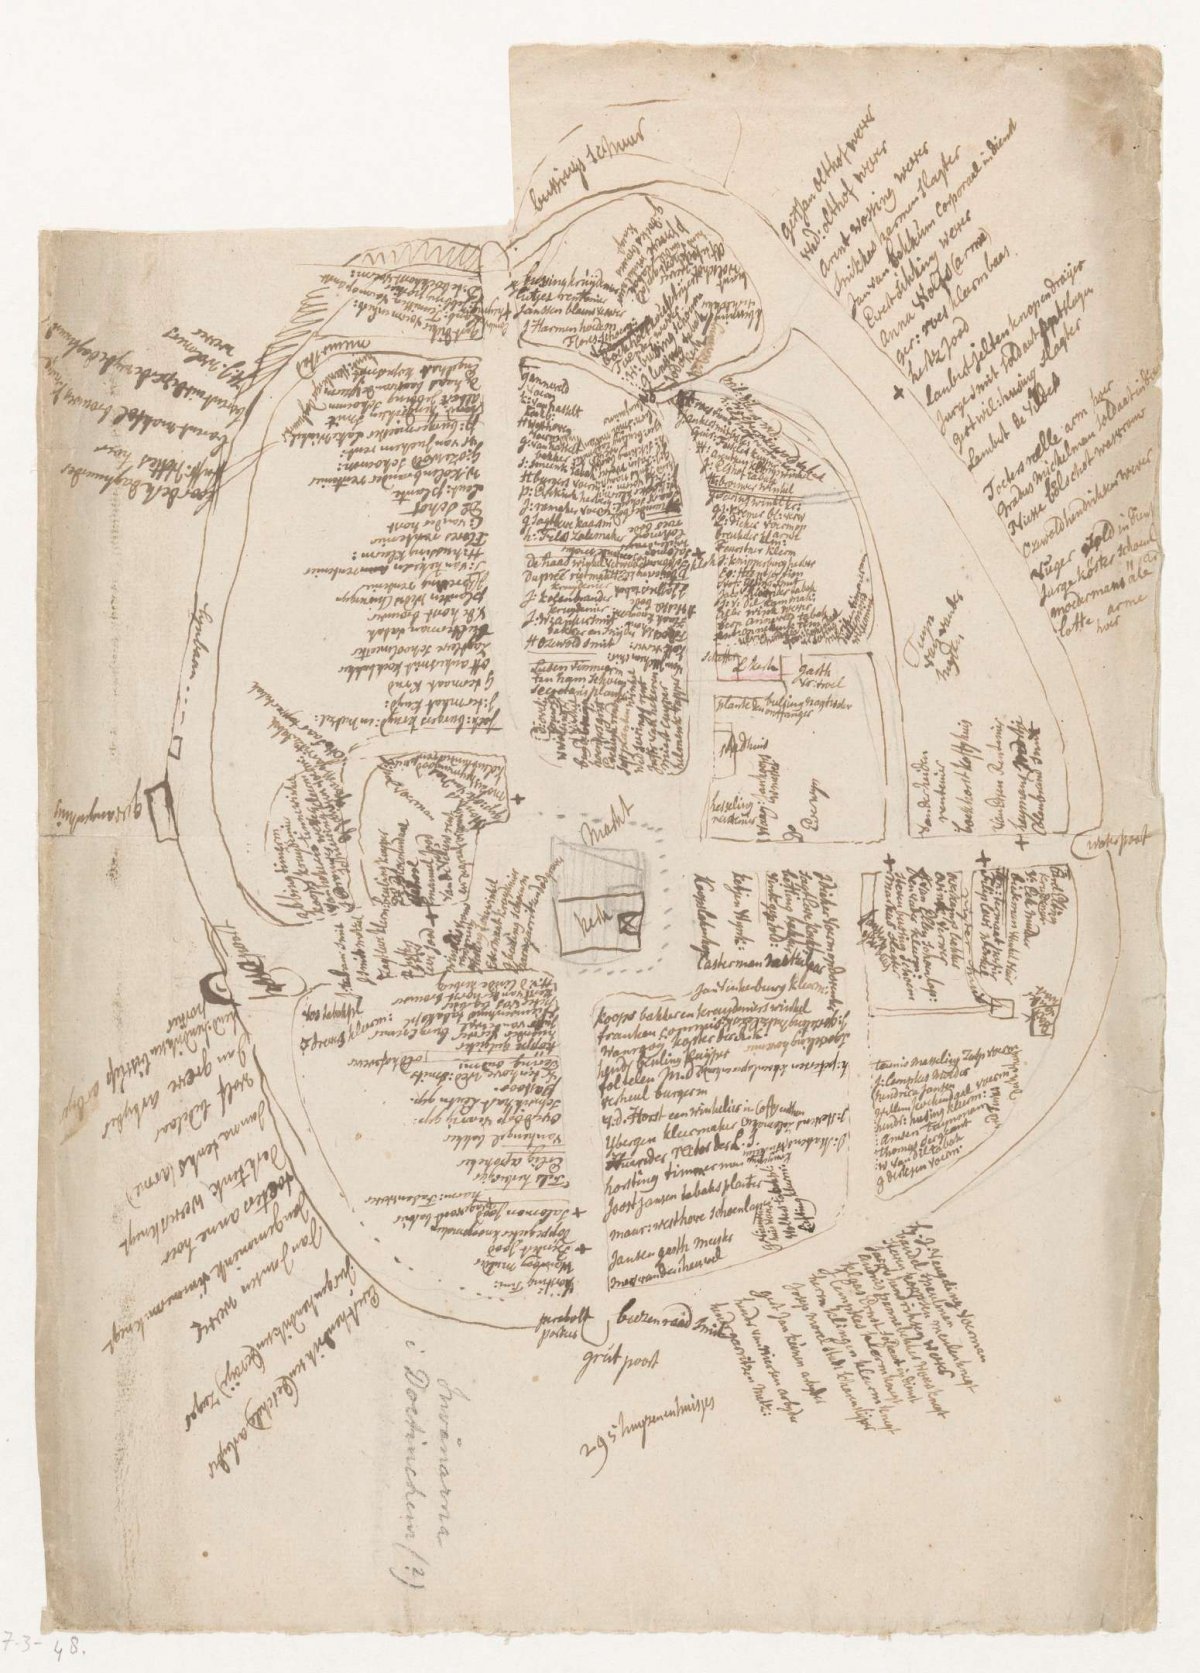 Map of Doetinchem, Jan Brandes, 1770 - 1778